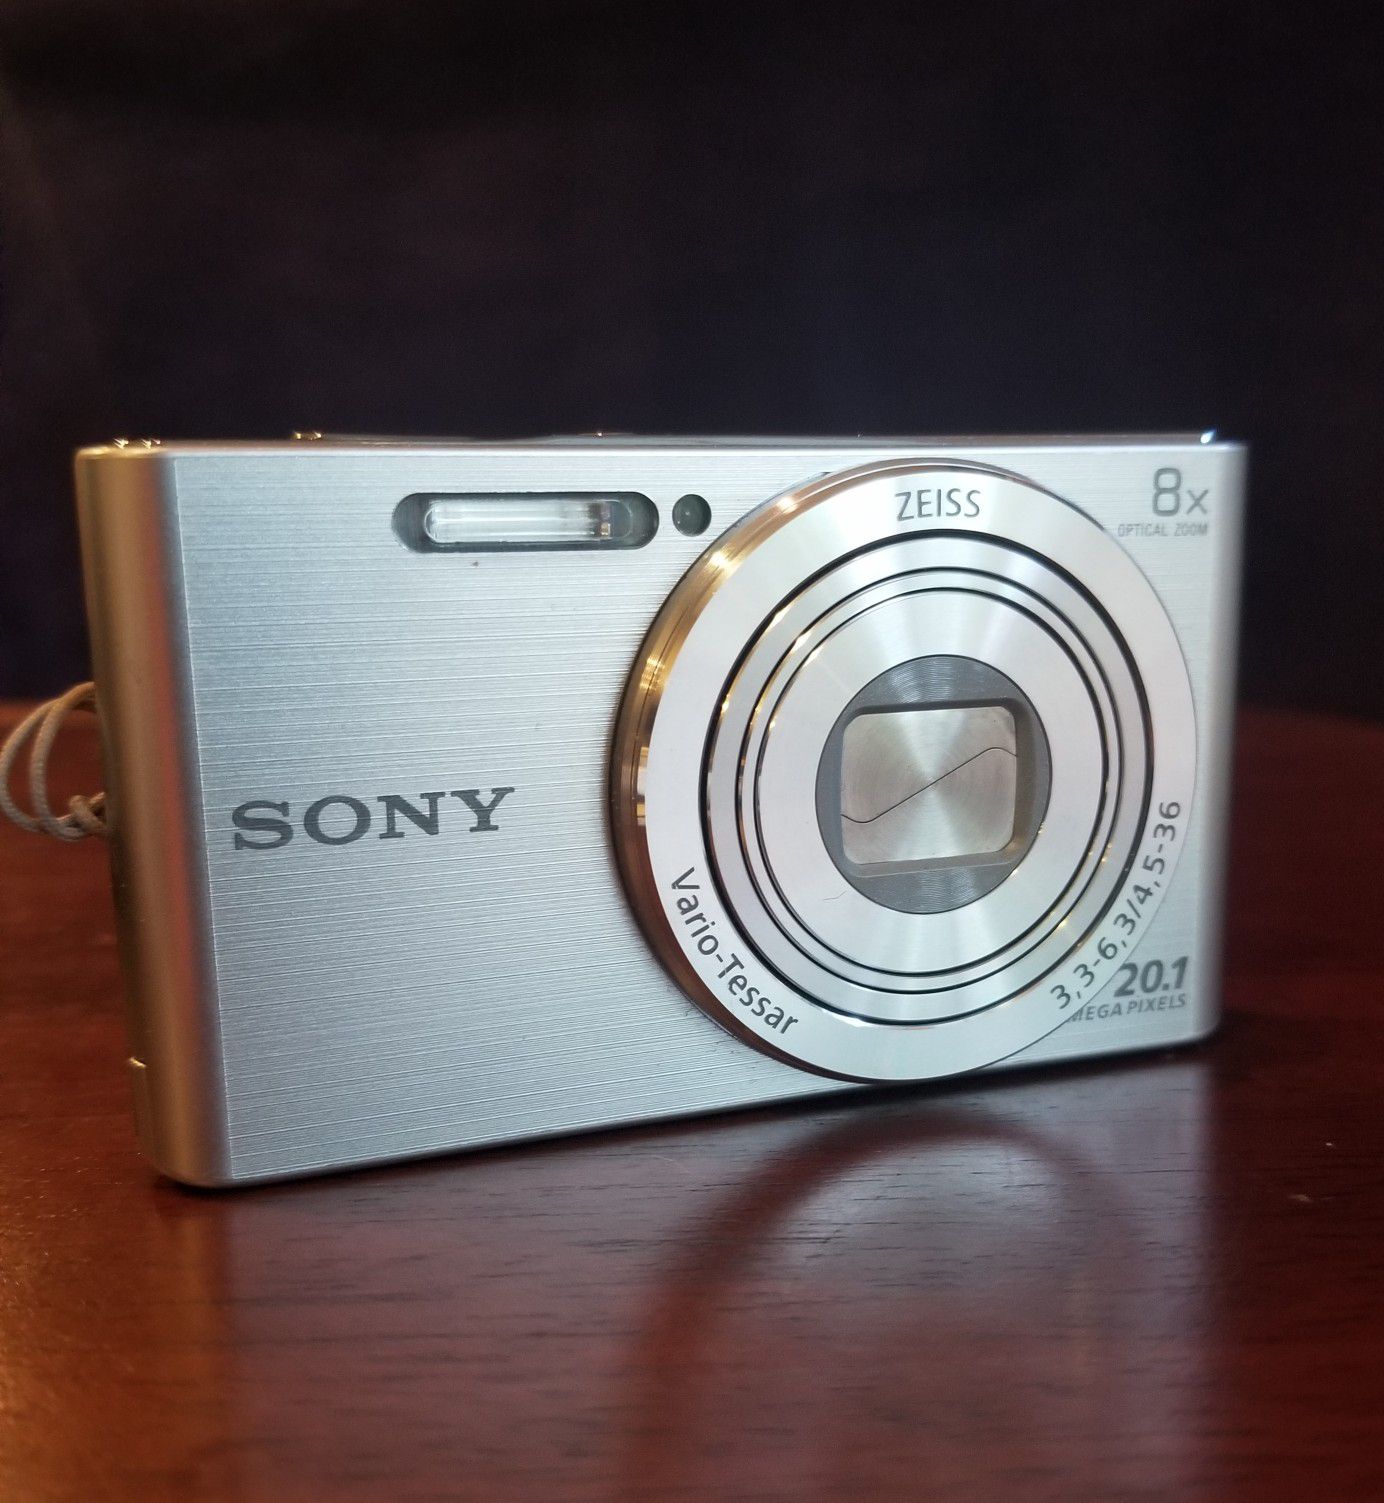 Sony Cybershot DSC-W830 20.1MP Digital Camera